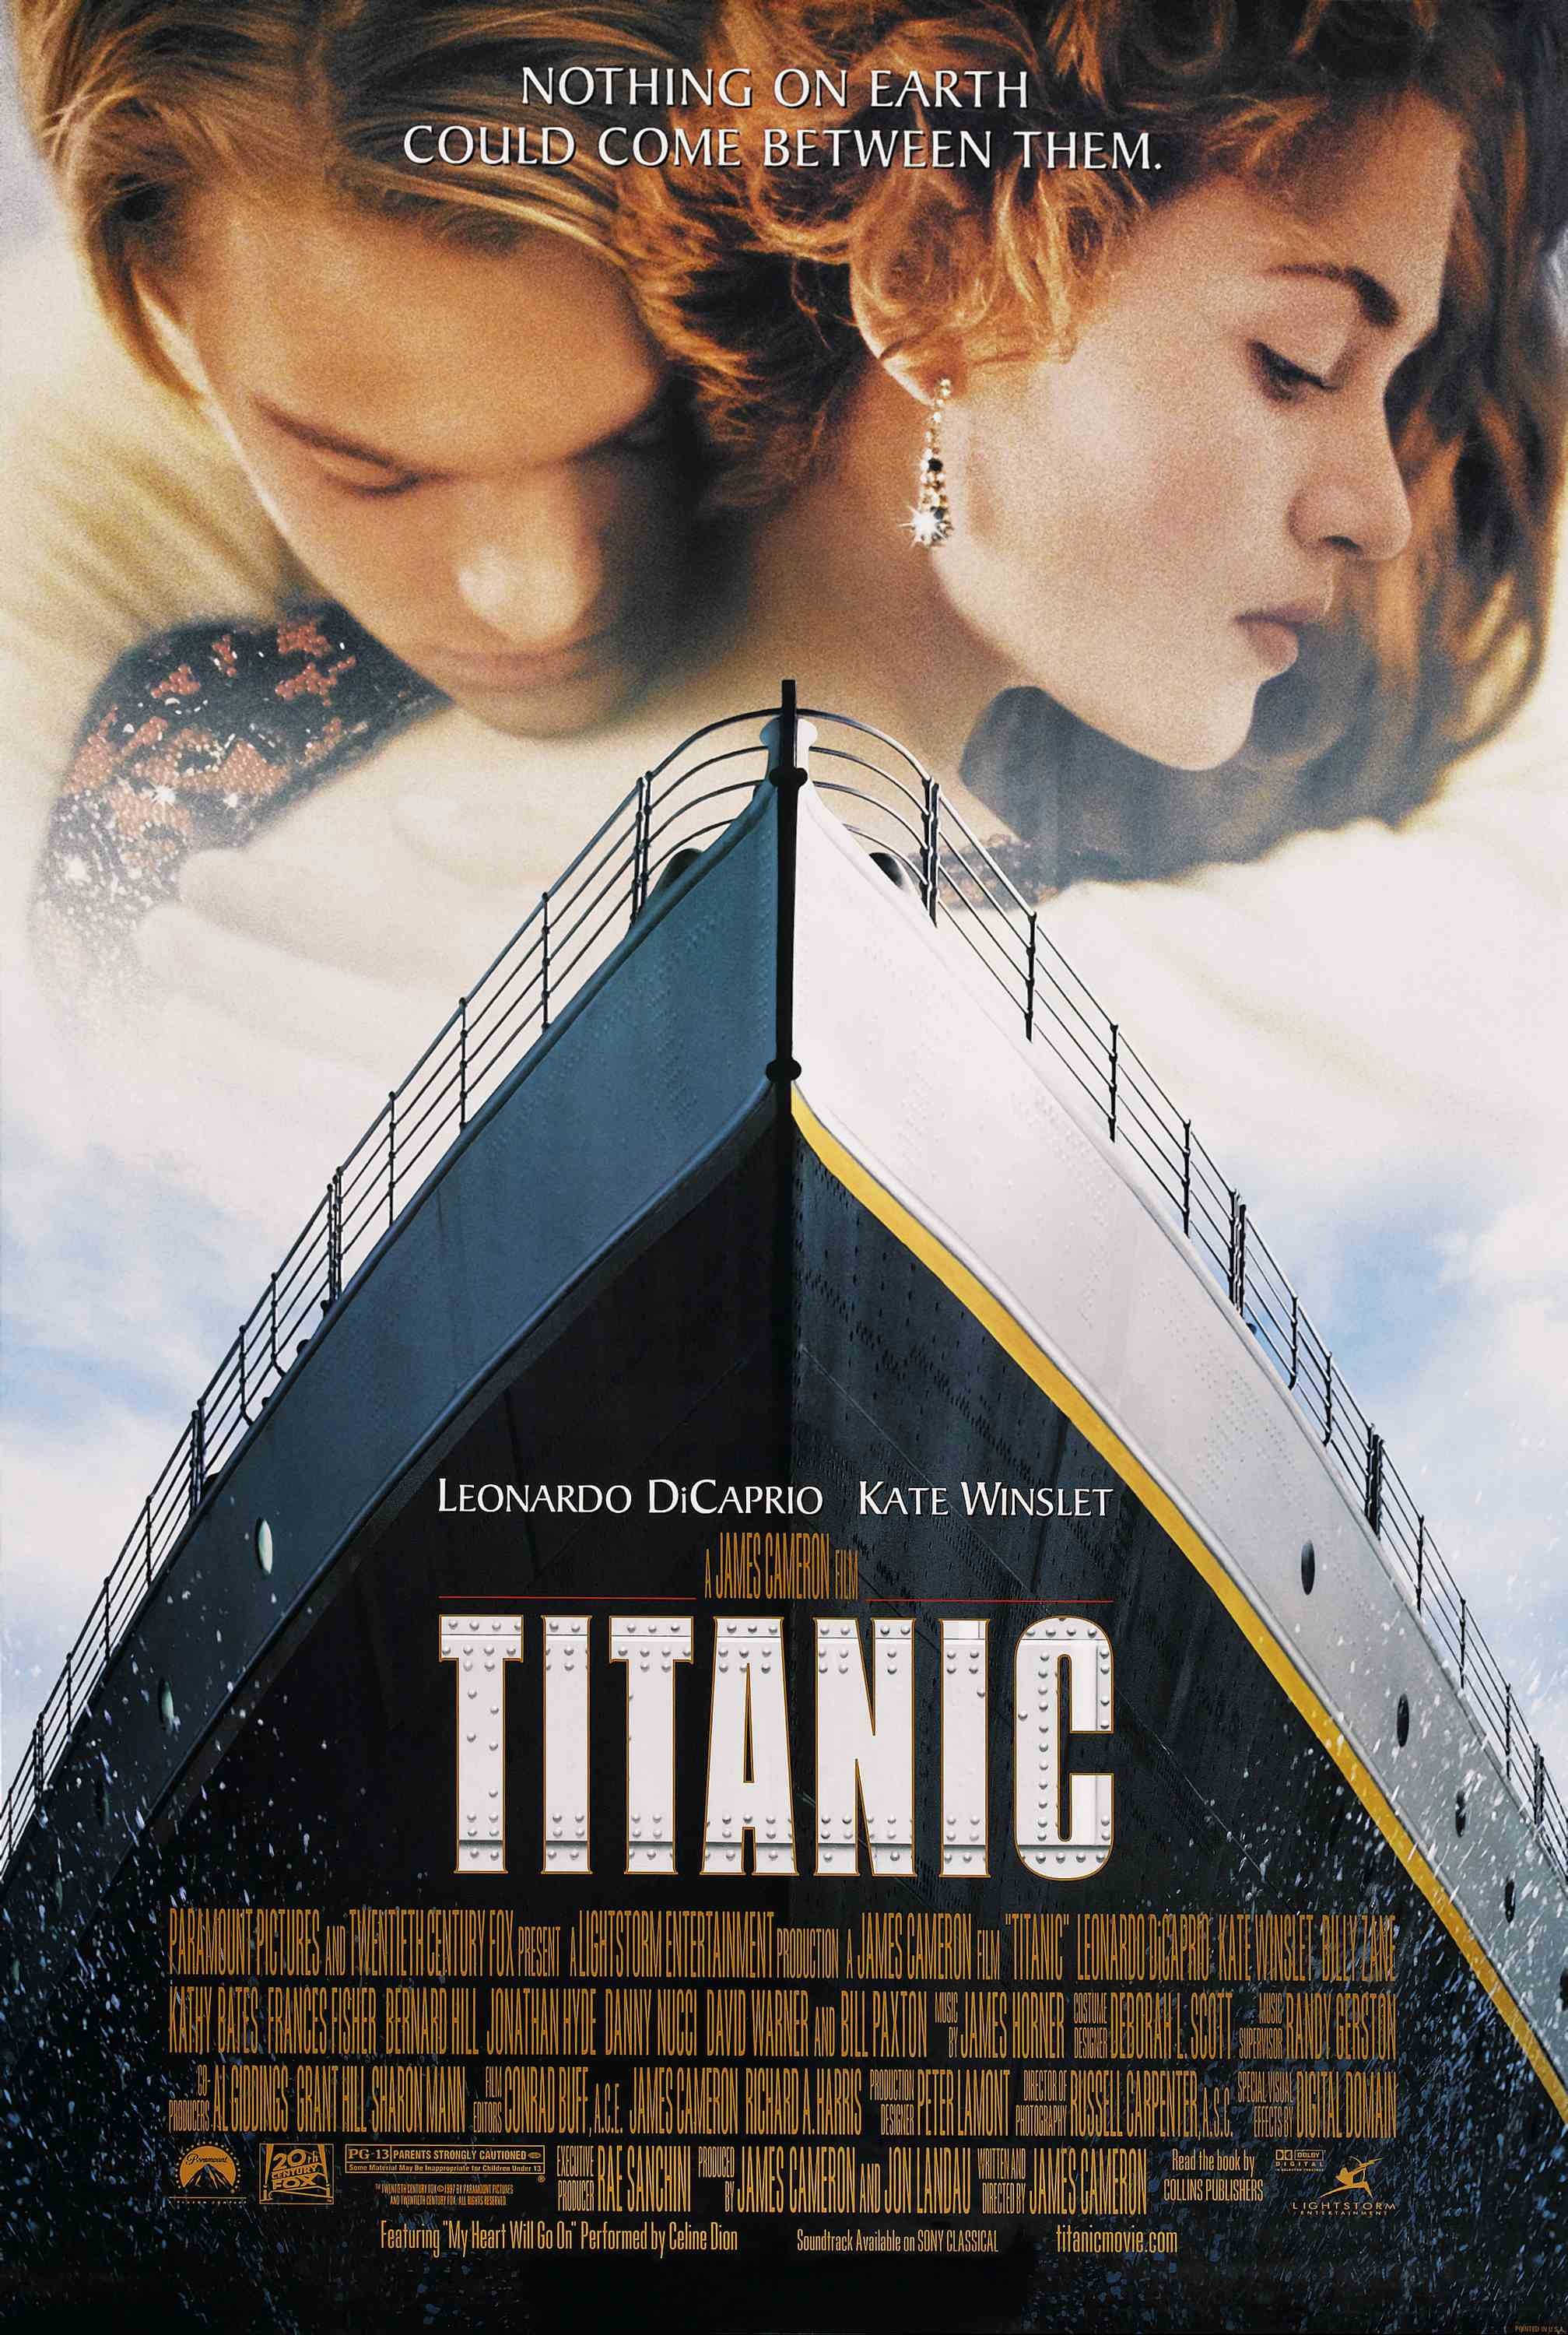 chidimma okeke recommends titanic full movie hindi pic